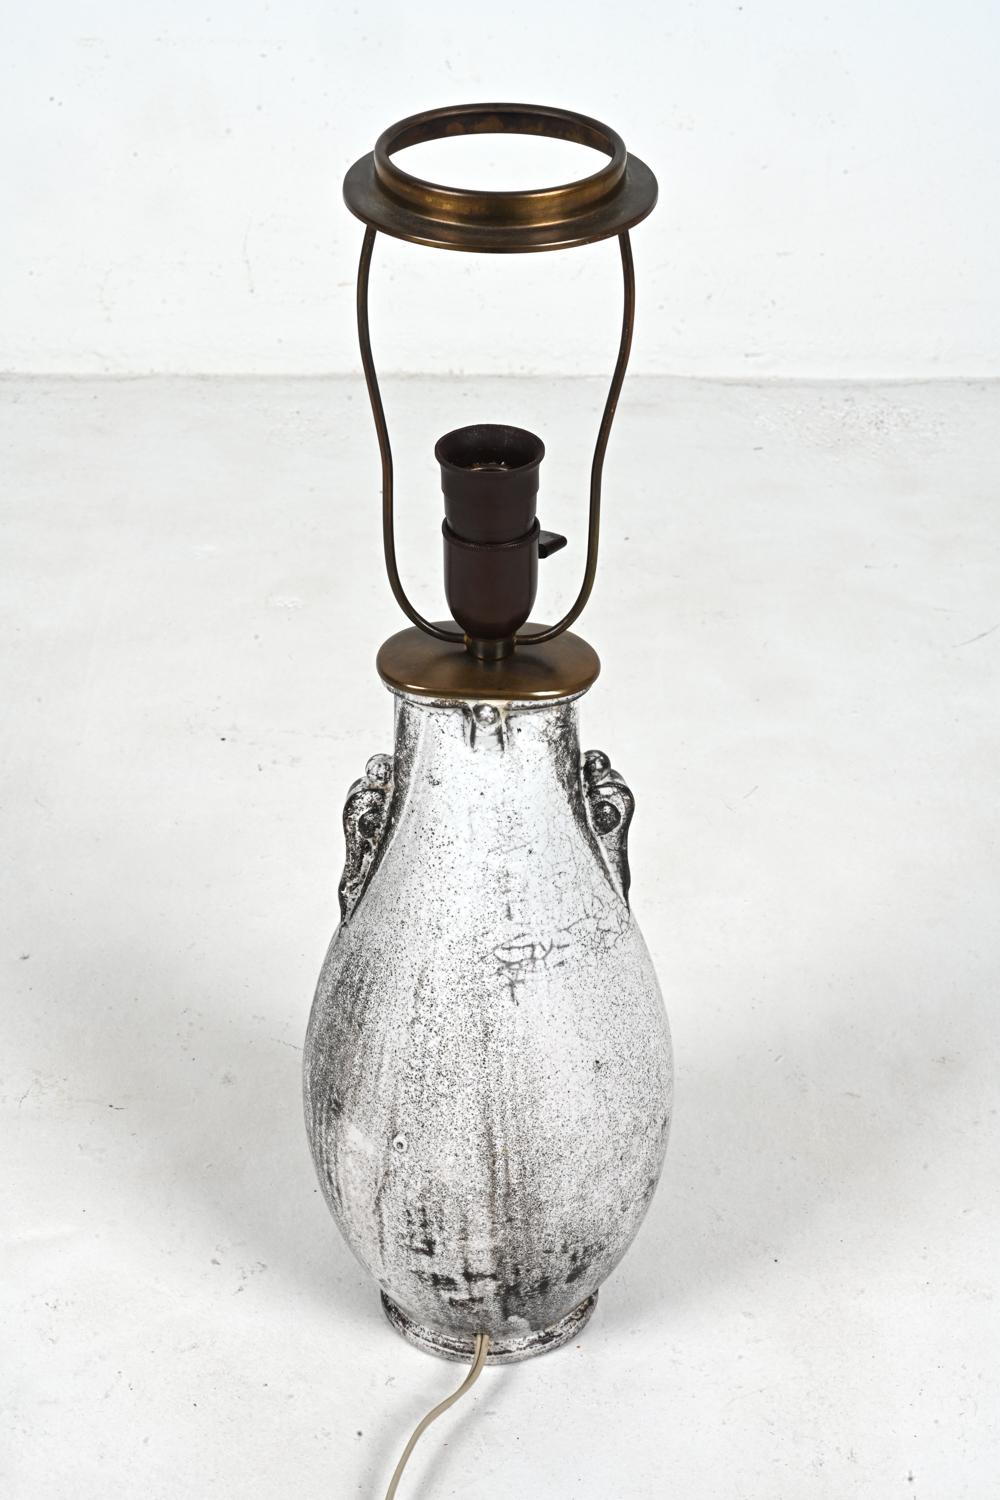 Rare Studio Ceramic Lamp by Svend Hammershøi for Kähler, Denmark, c. 1940 For Sale 5